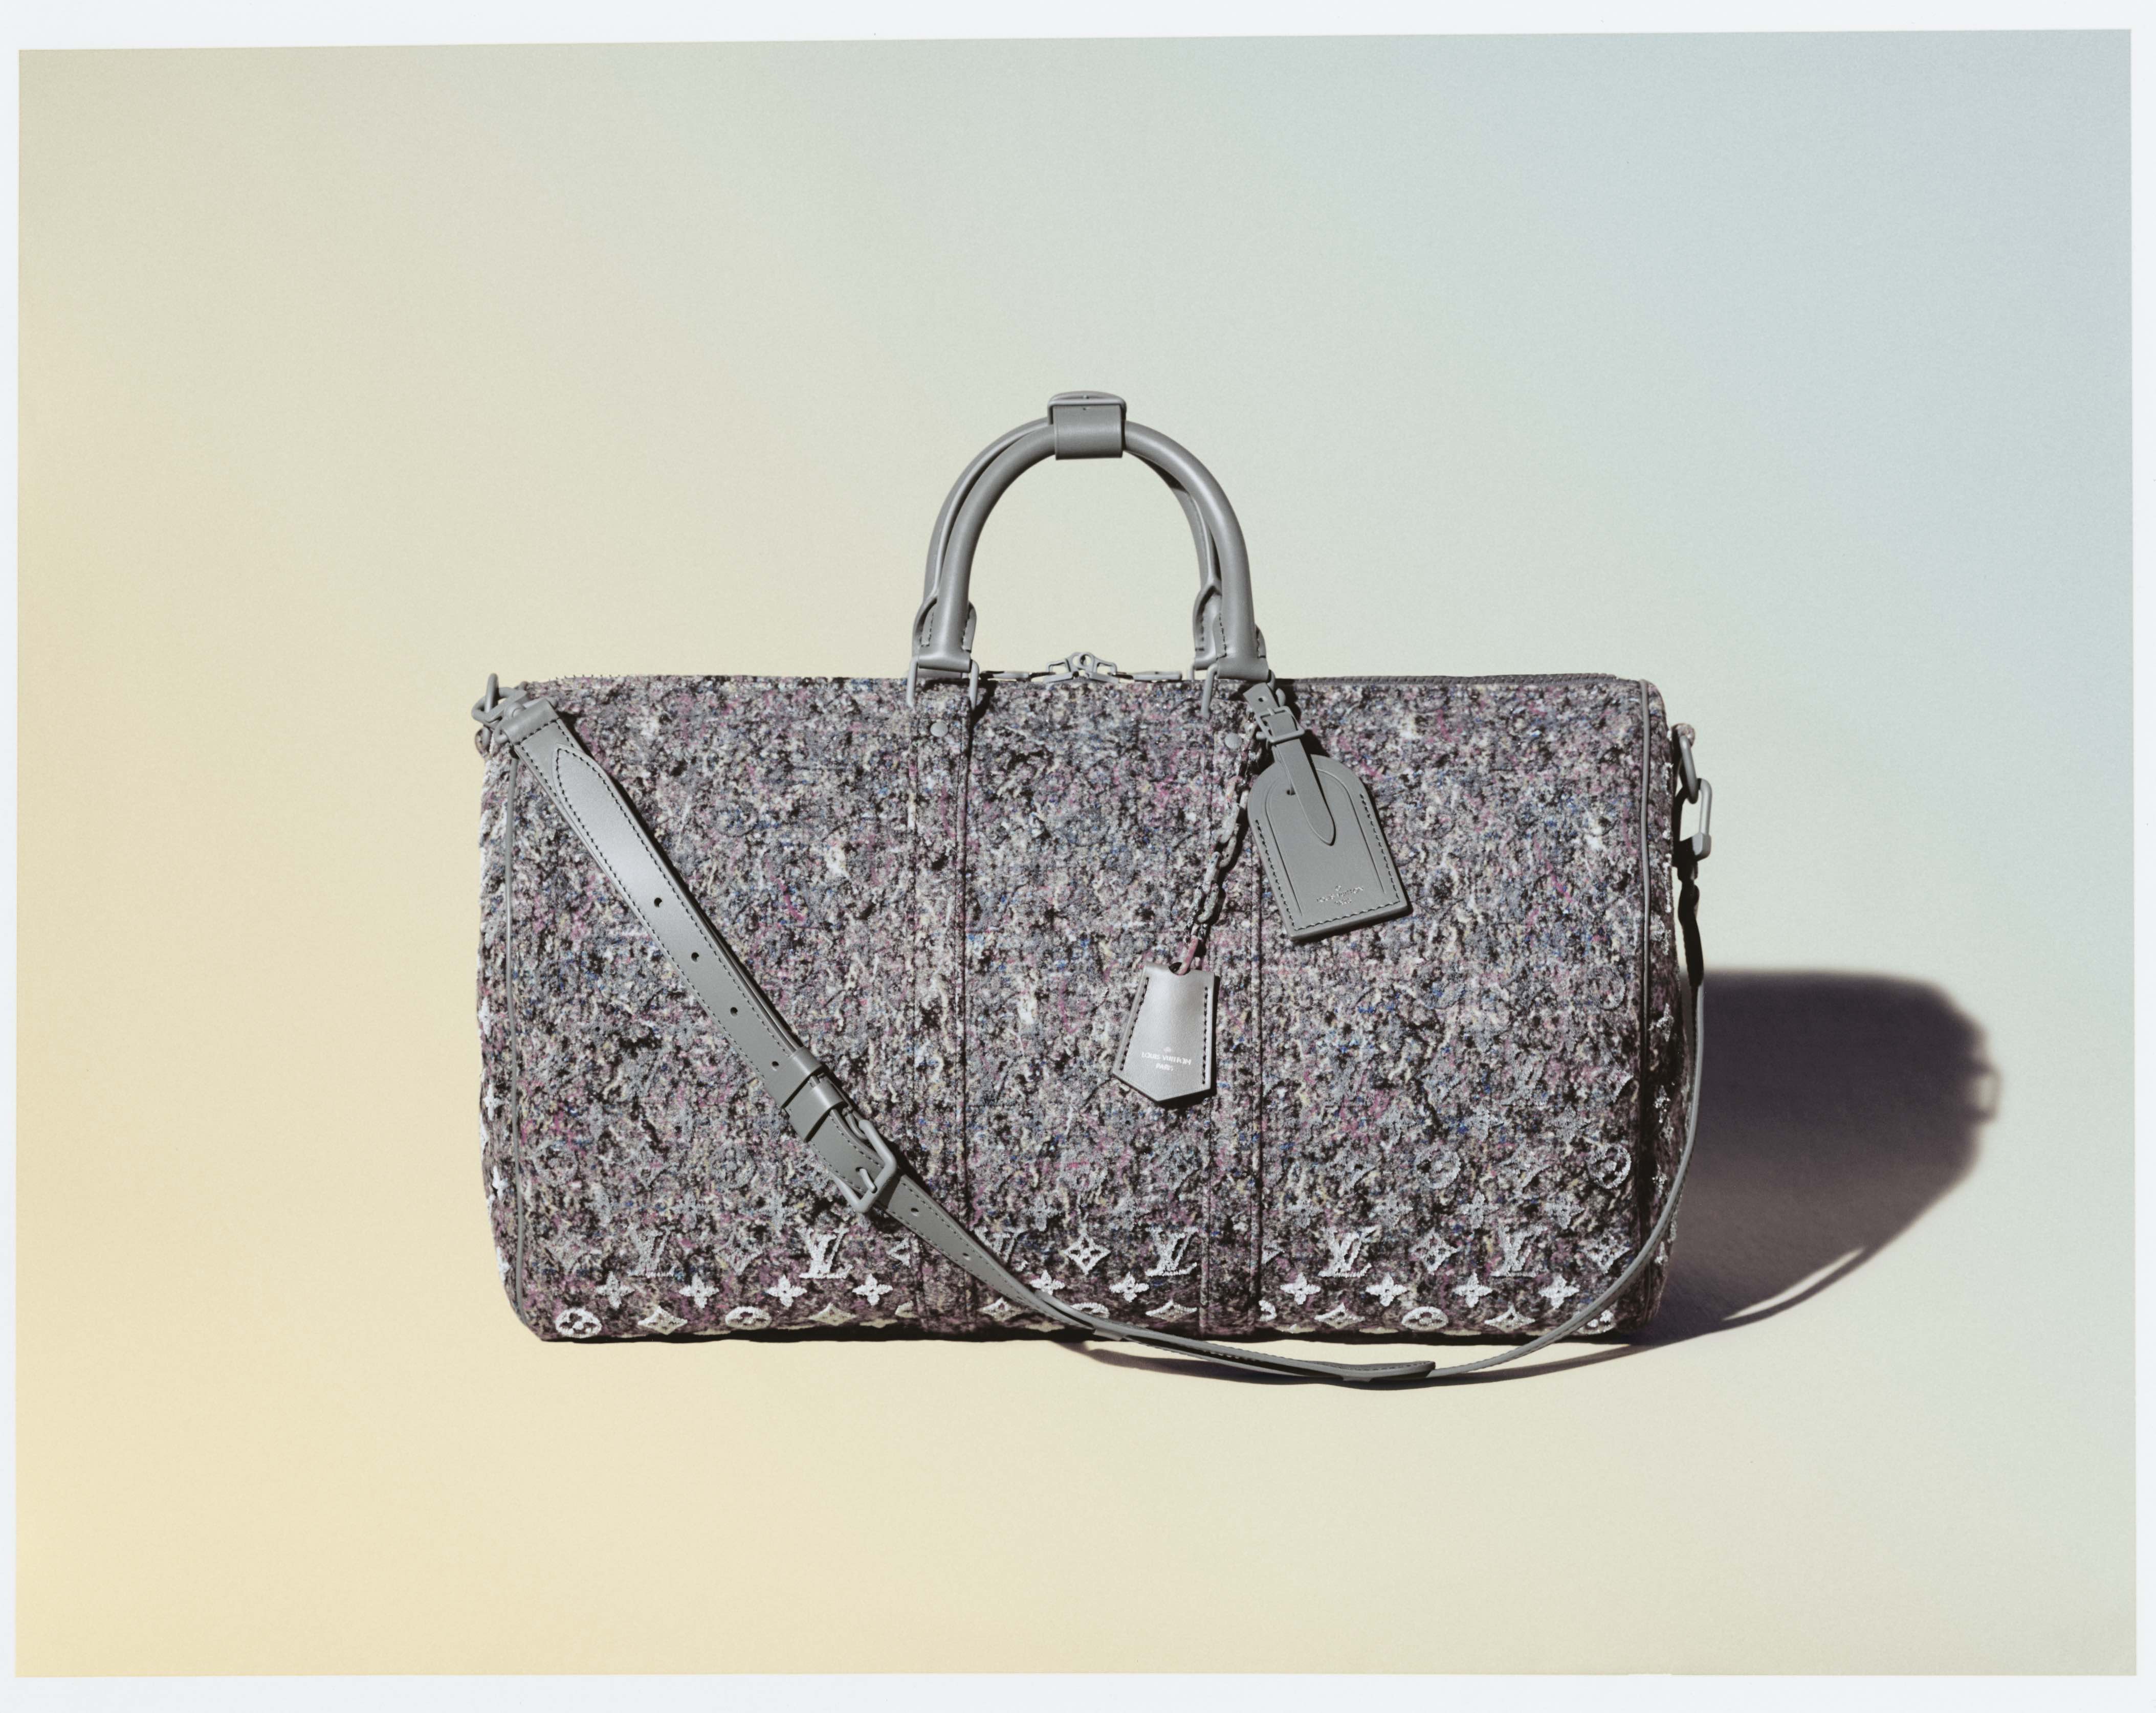 Louis Vuitton se vuelve eco-responsable con su nueva colección Felt Line